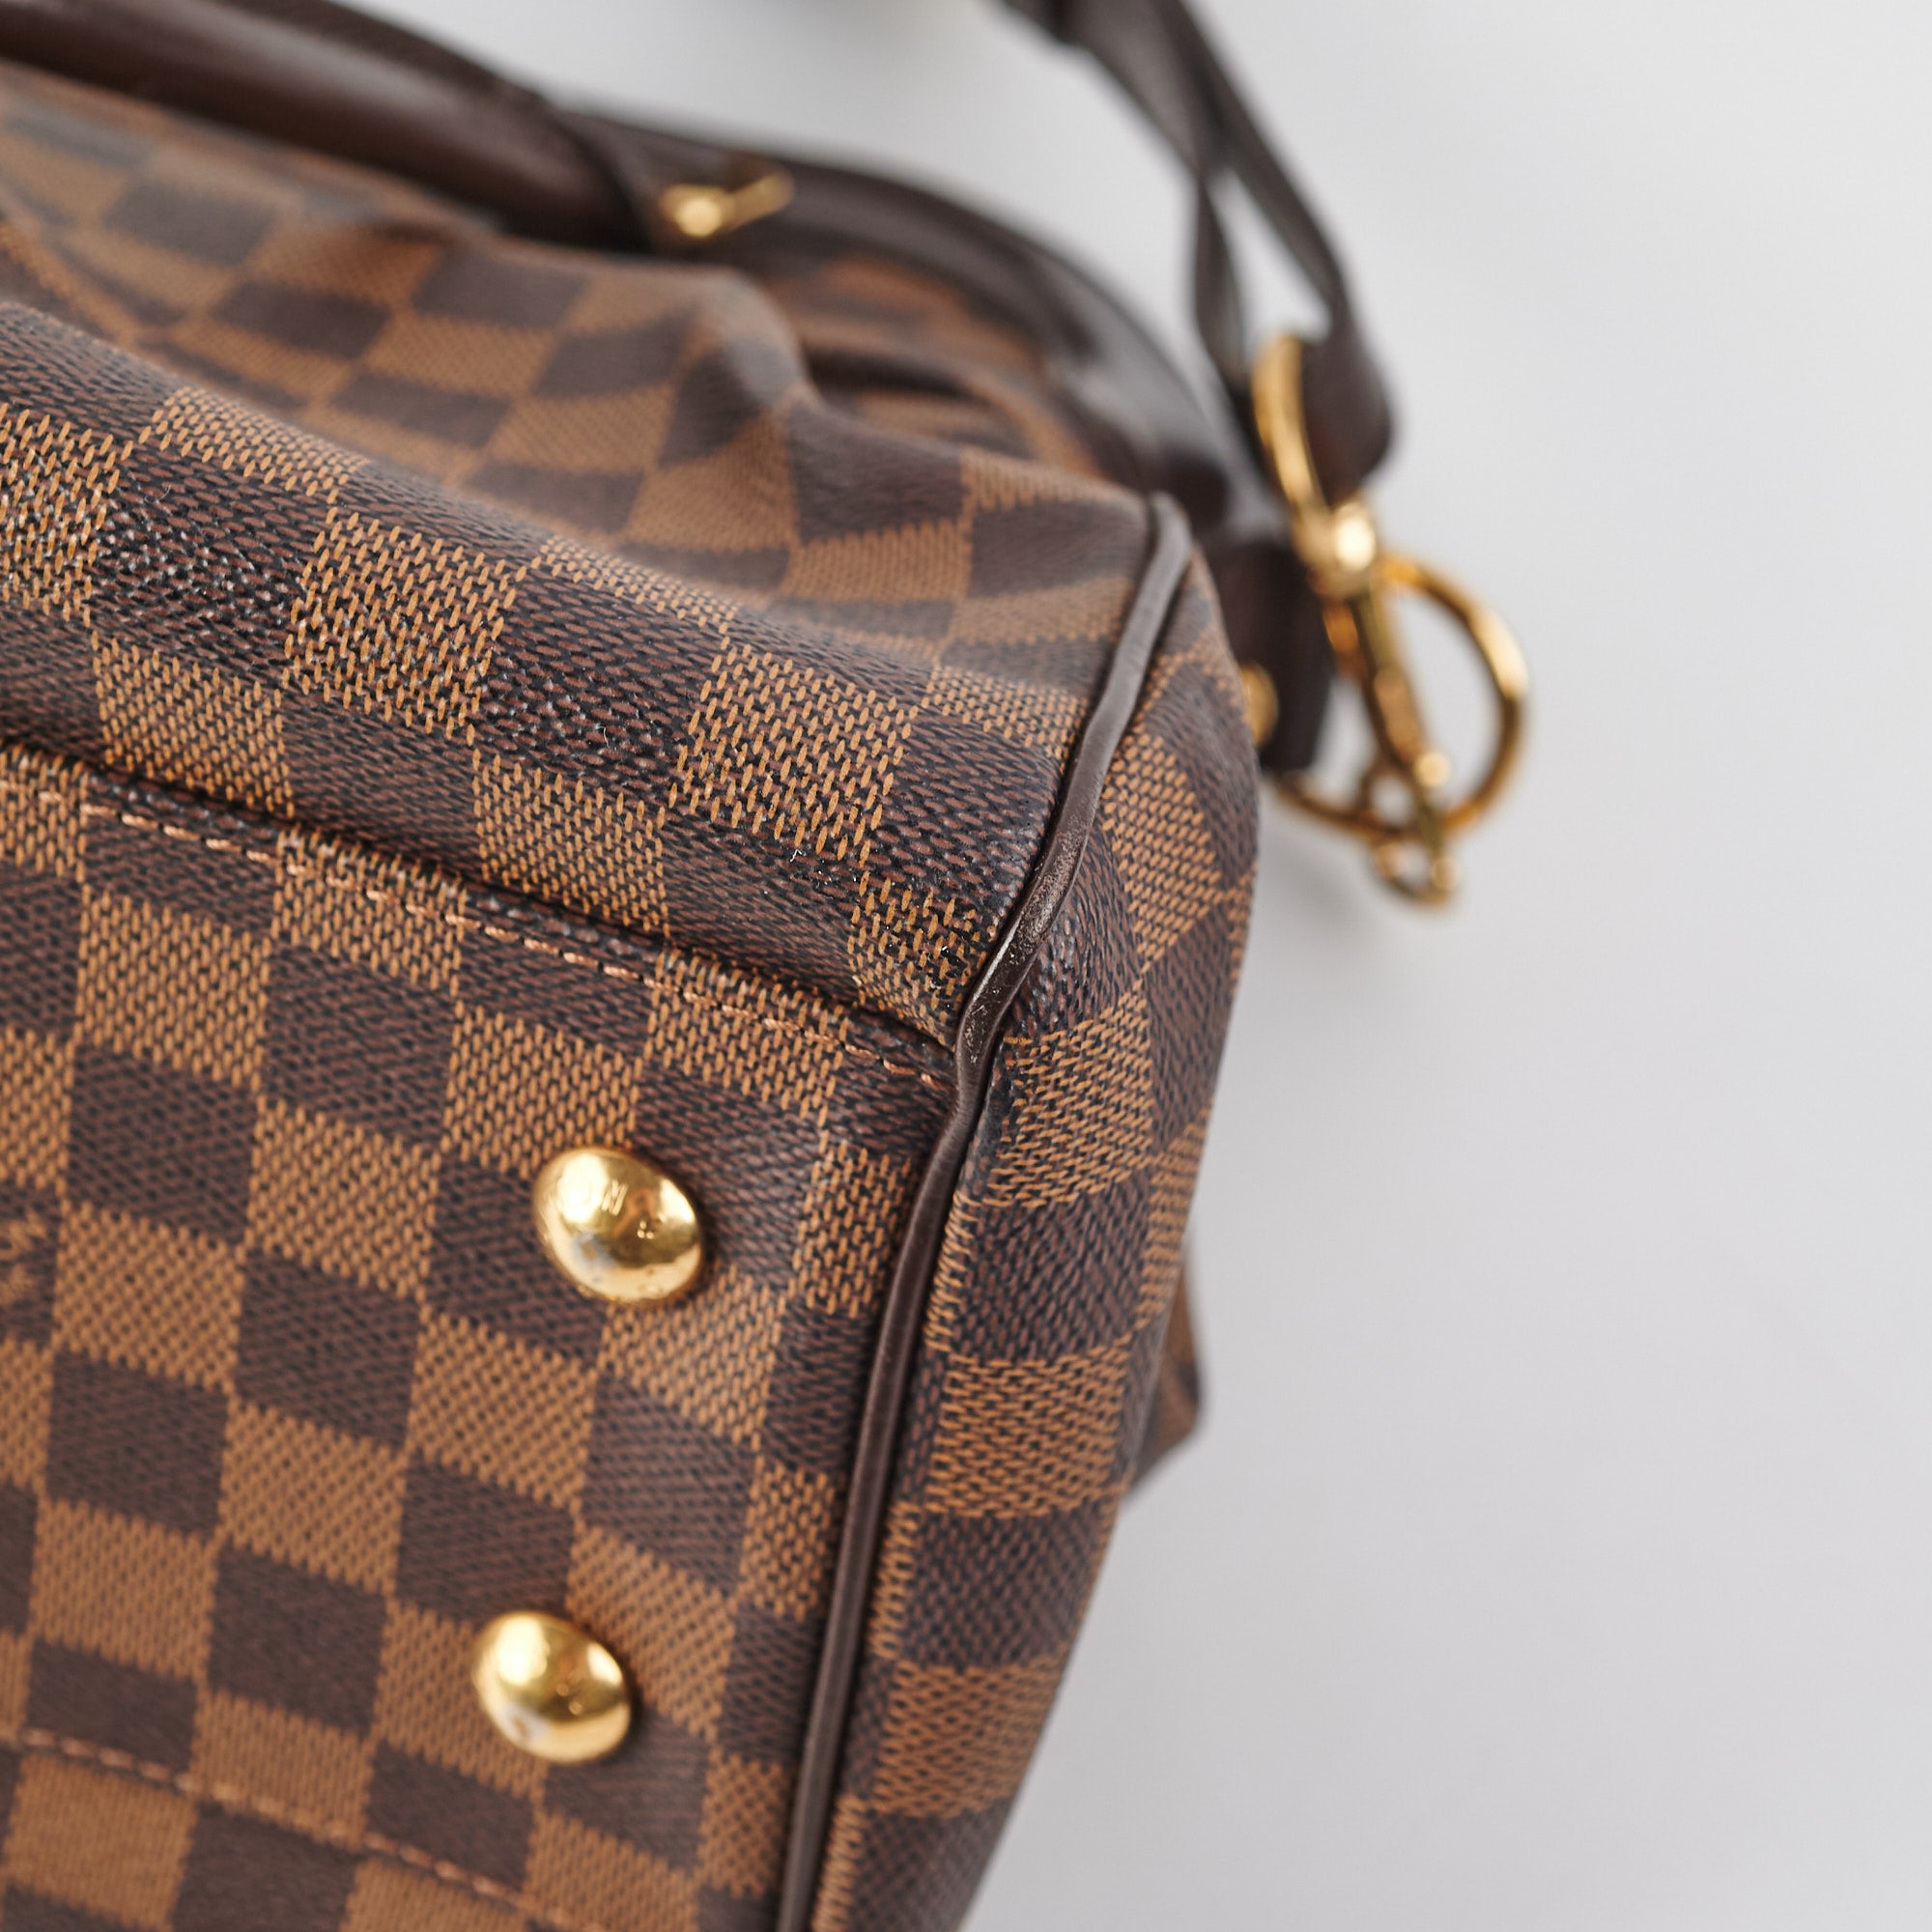 Authentic Louis Vuitton Trevi PМ Damier Ebene Satchel Handbag TJ0172 France